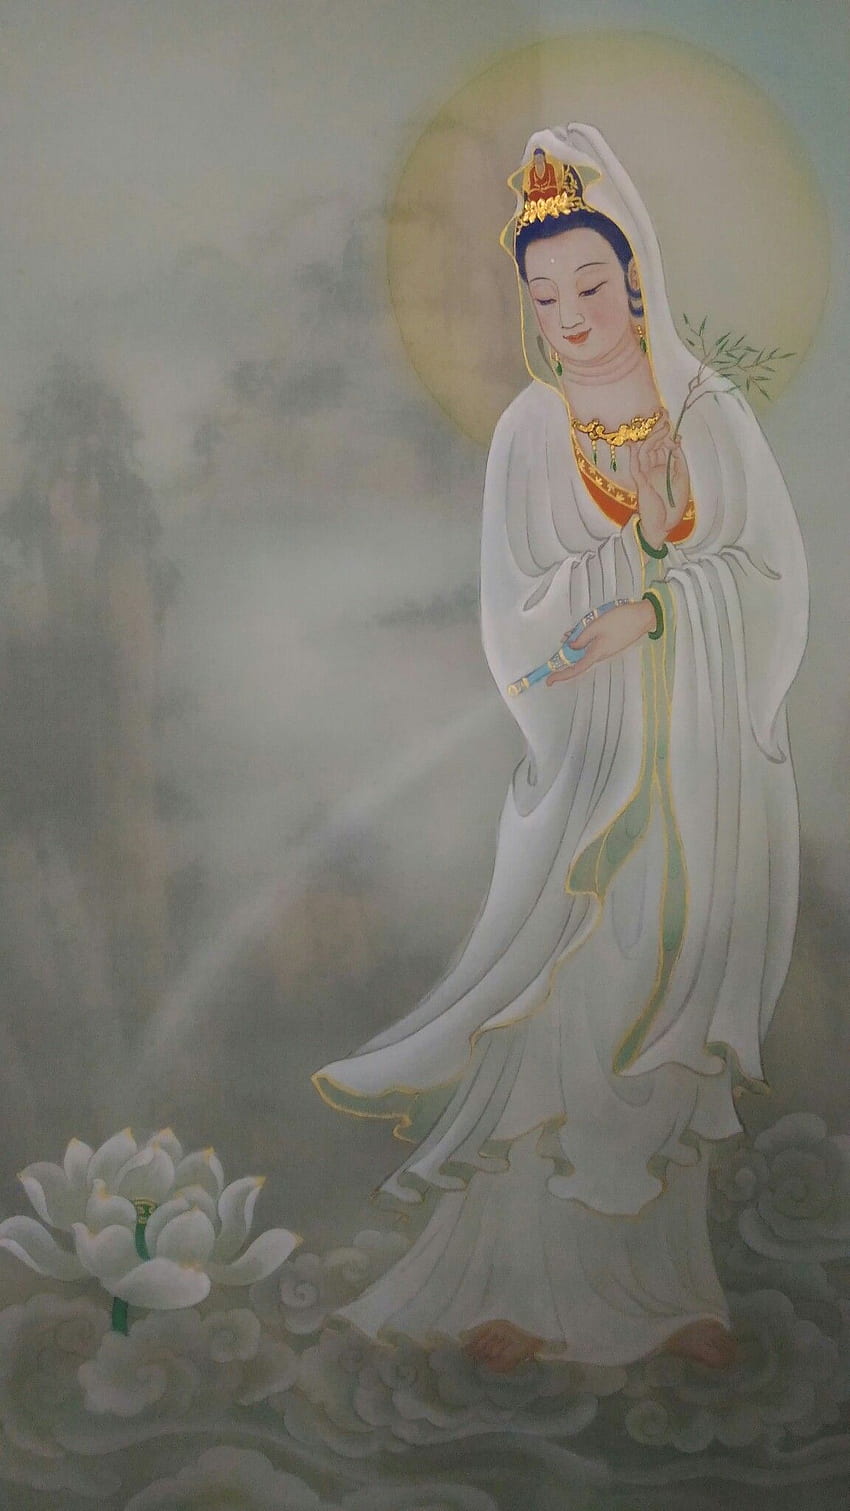 Kuan Yin: Thần thọ và bình an là hai trong số các giá trị được tôn vinh trong tôn giáo của Phật giáo. Kuan Yin, nữ thần trẻ dịu dàng, thường được tôn vinh với vai trò là vị thần của lòng từ bi. Hình ảnh Kuan Yin sẽ giúp bạn cảm thấy yên bình trong không gian sống của mình.